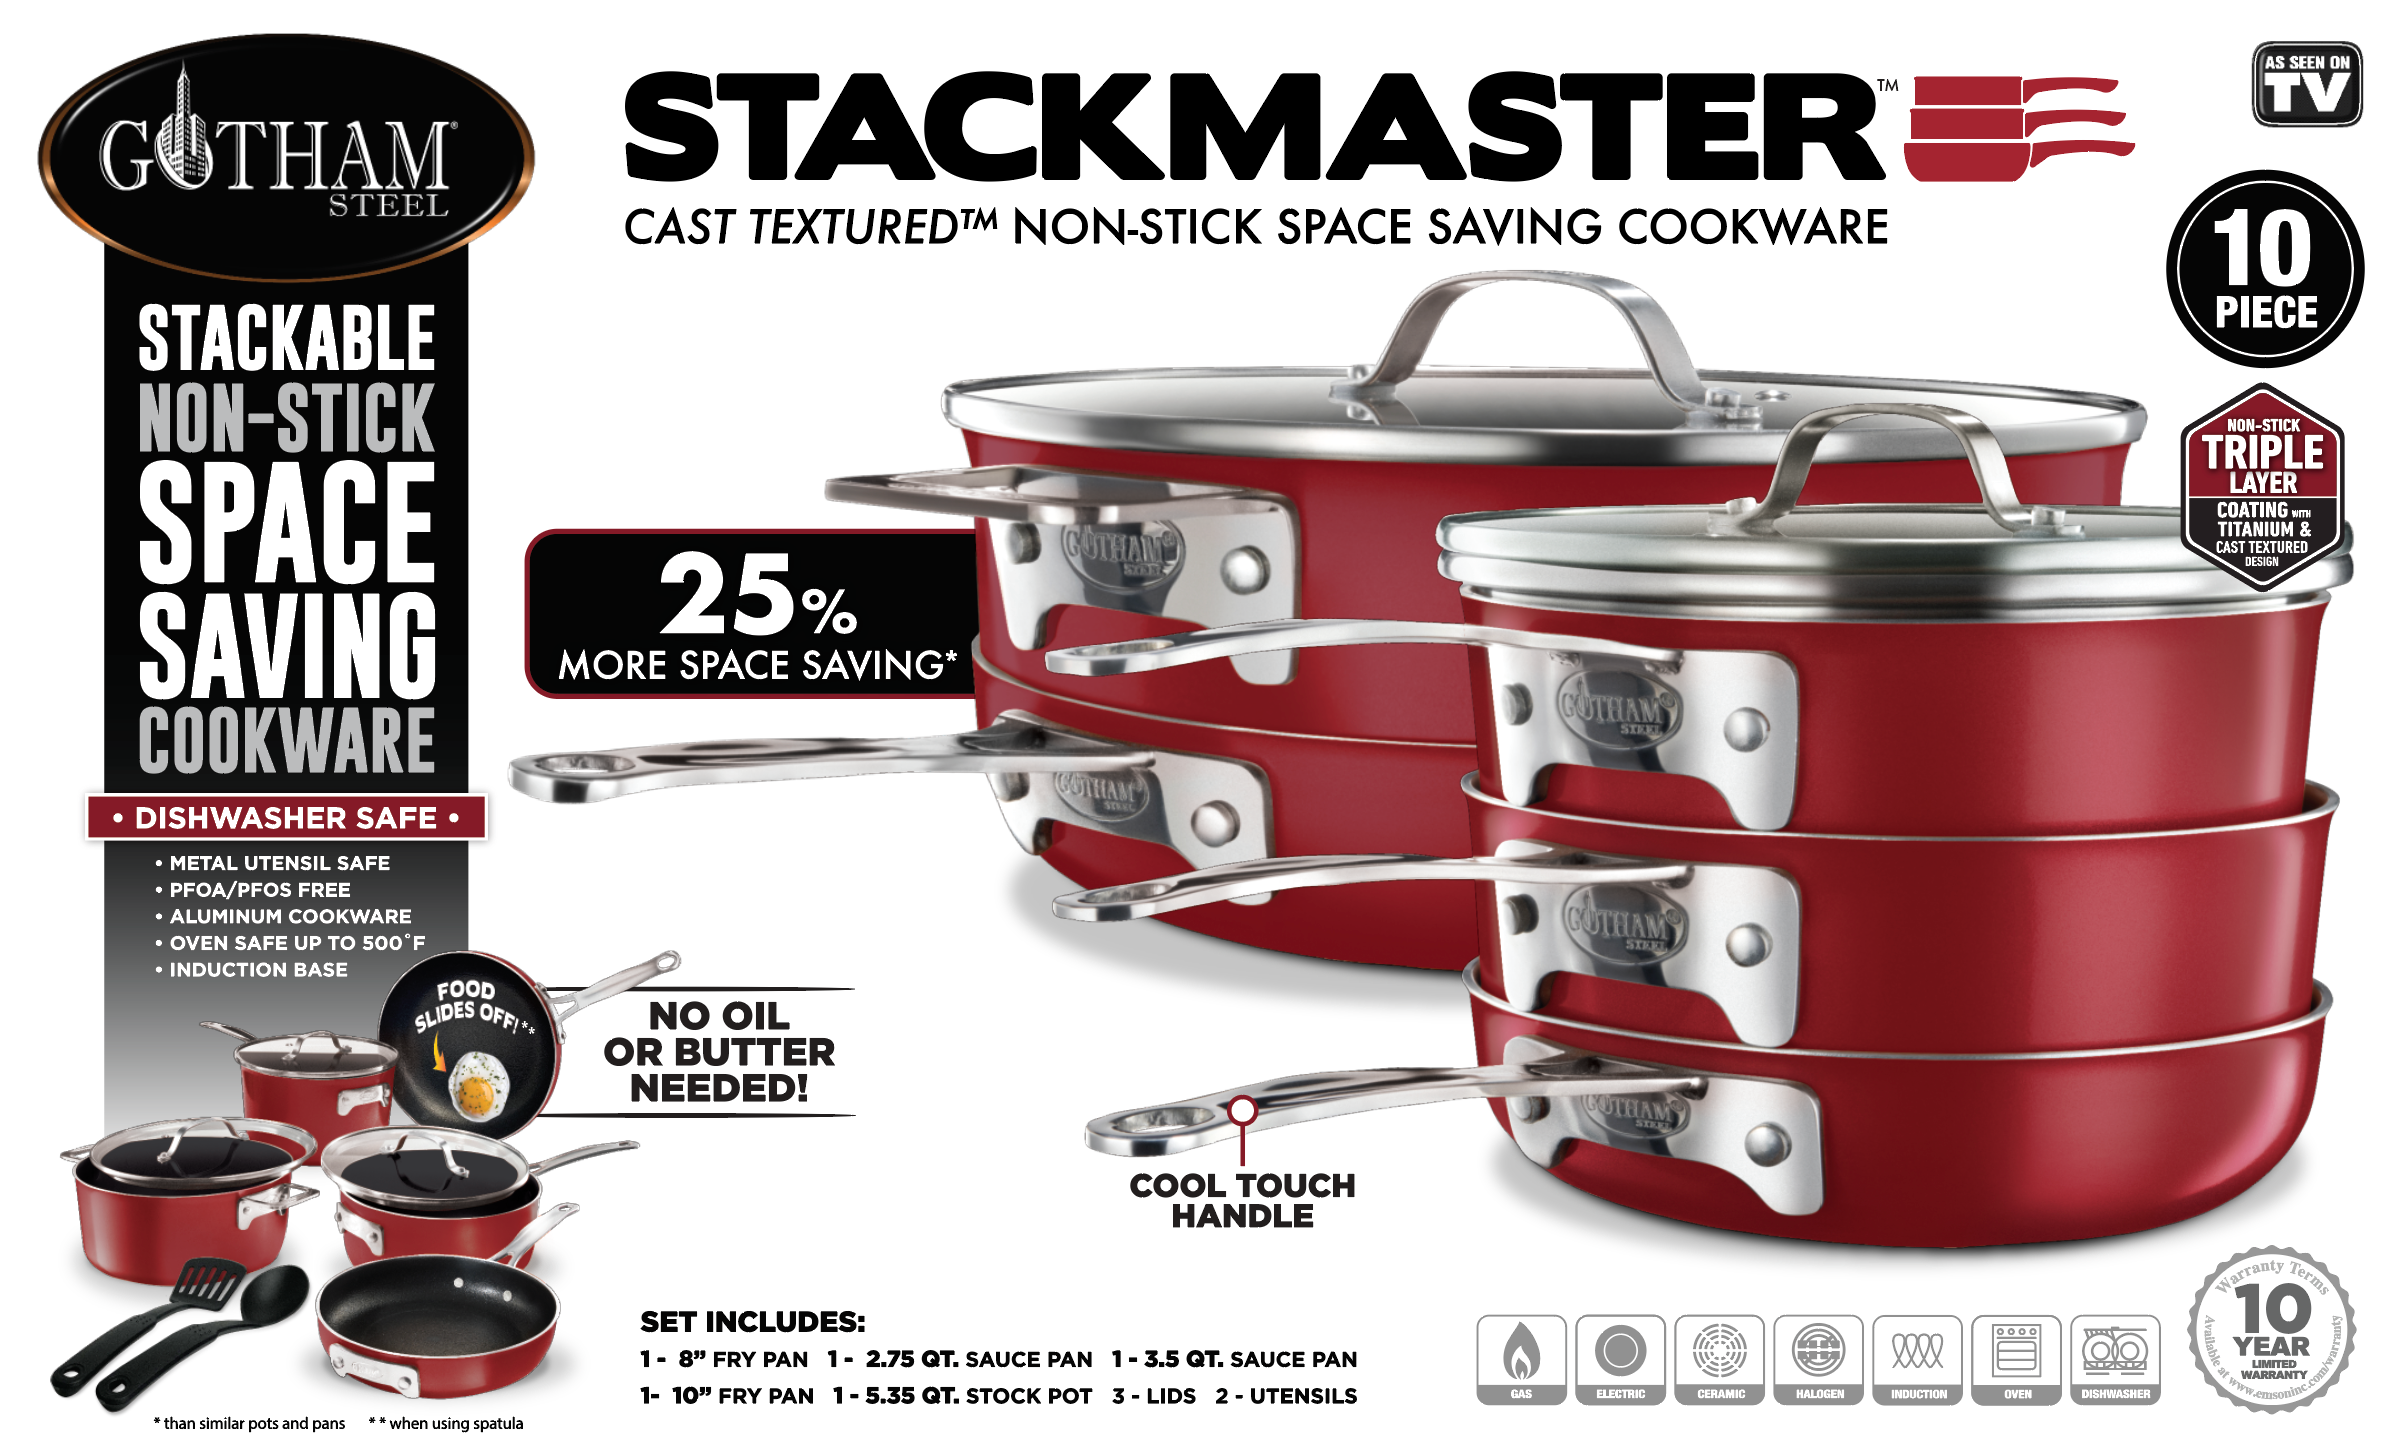 Gotham Steel Stackmaster 10-Piece Cast Textured Space-Saving